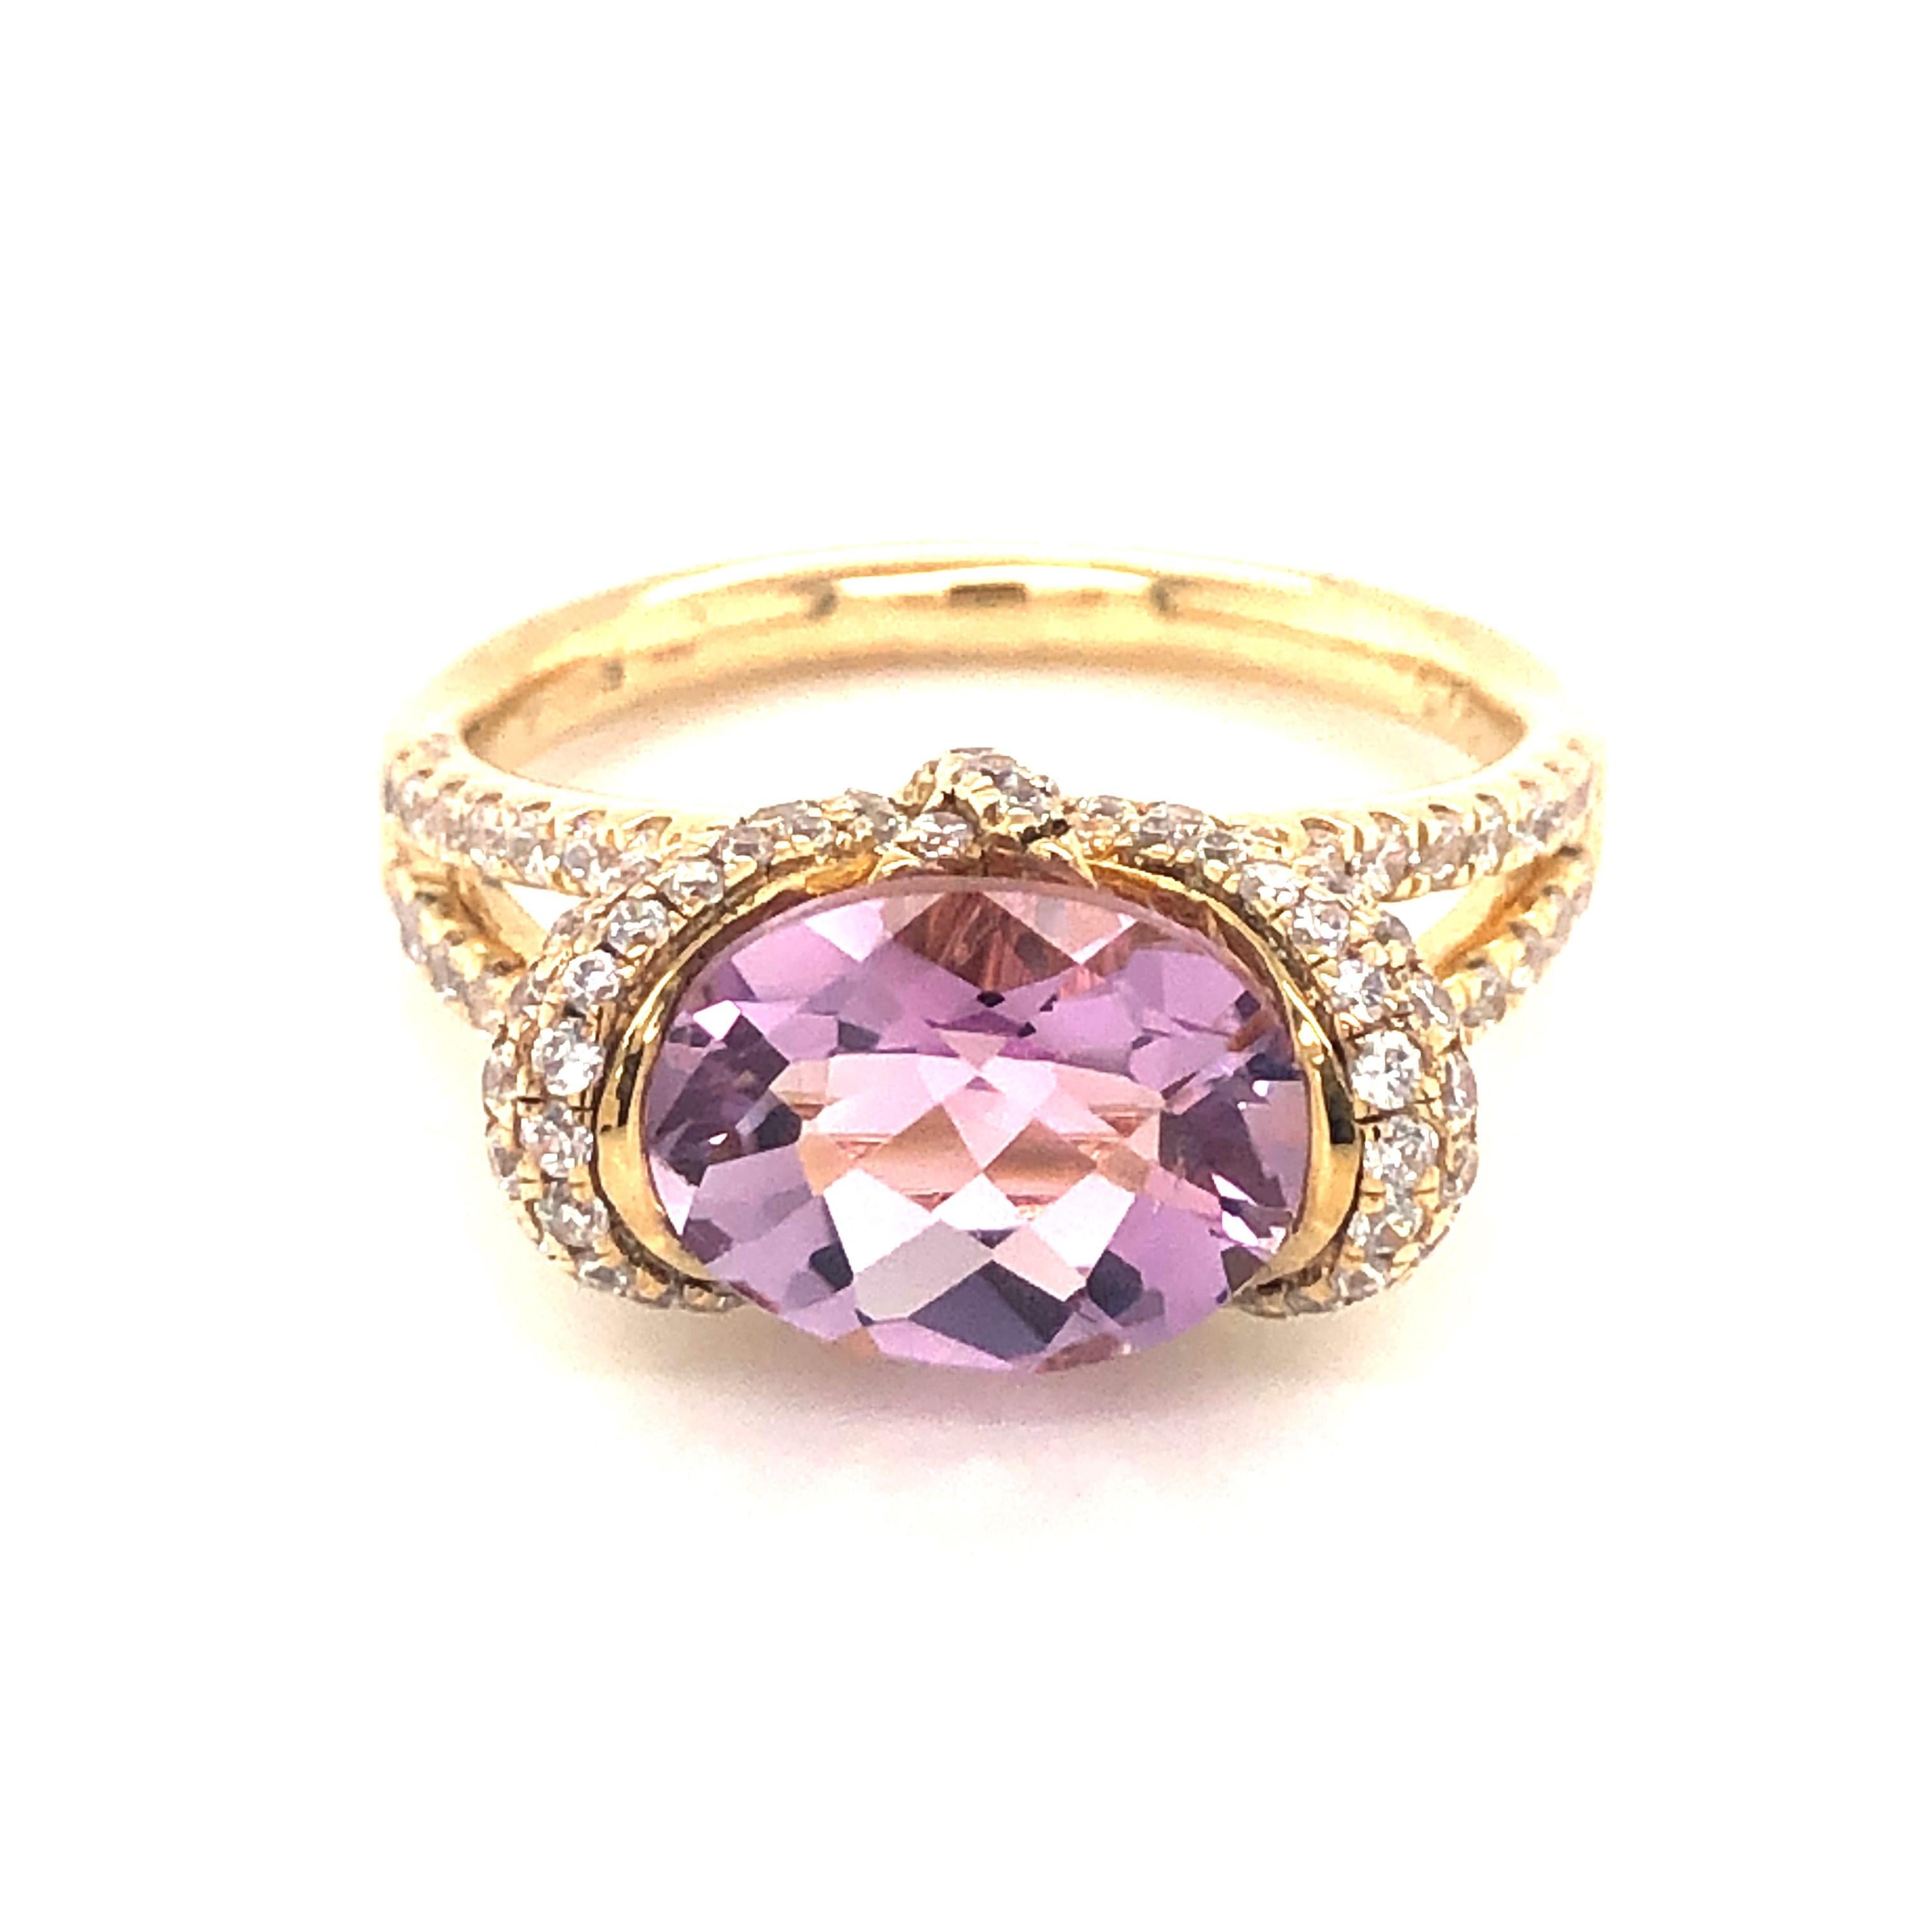 Dieser wunderschöne Ring, der mit leuchtenden violetten Farbtönen durchsetzt ist, wird mit Sicherheit bewundernde Blicke erregen. 

Mit einem oval geschliffenen Amethysten mit einem Gewicht von 1,37 Karat, umgeben von runden Zirkonen im